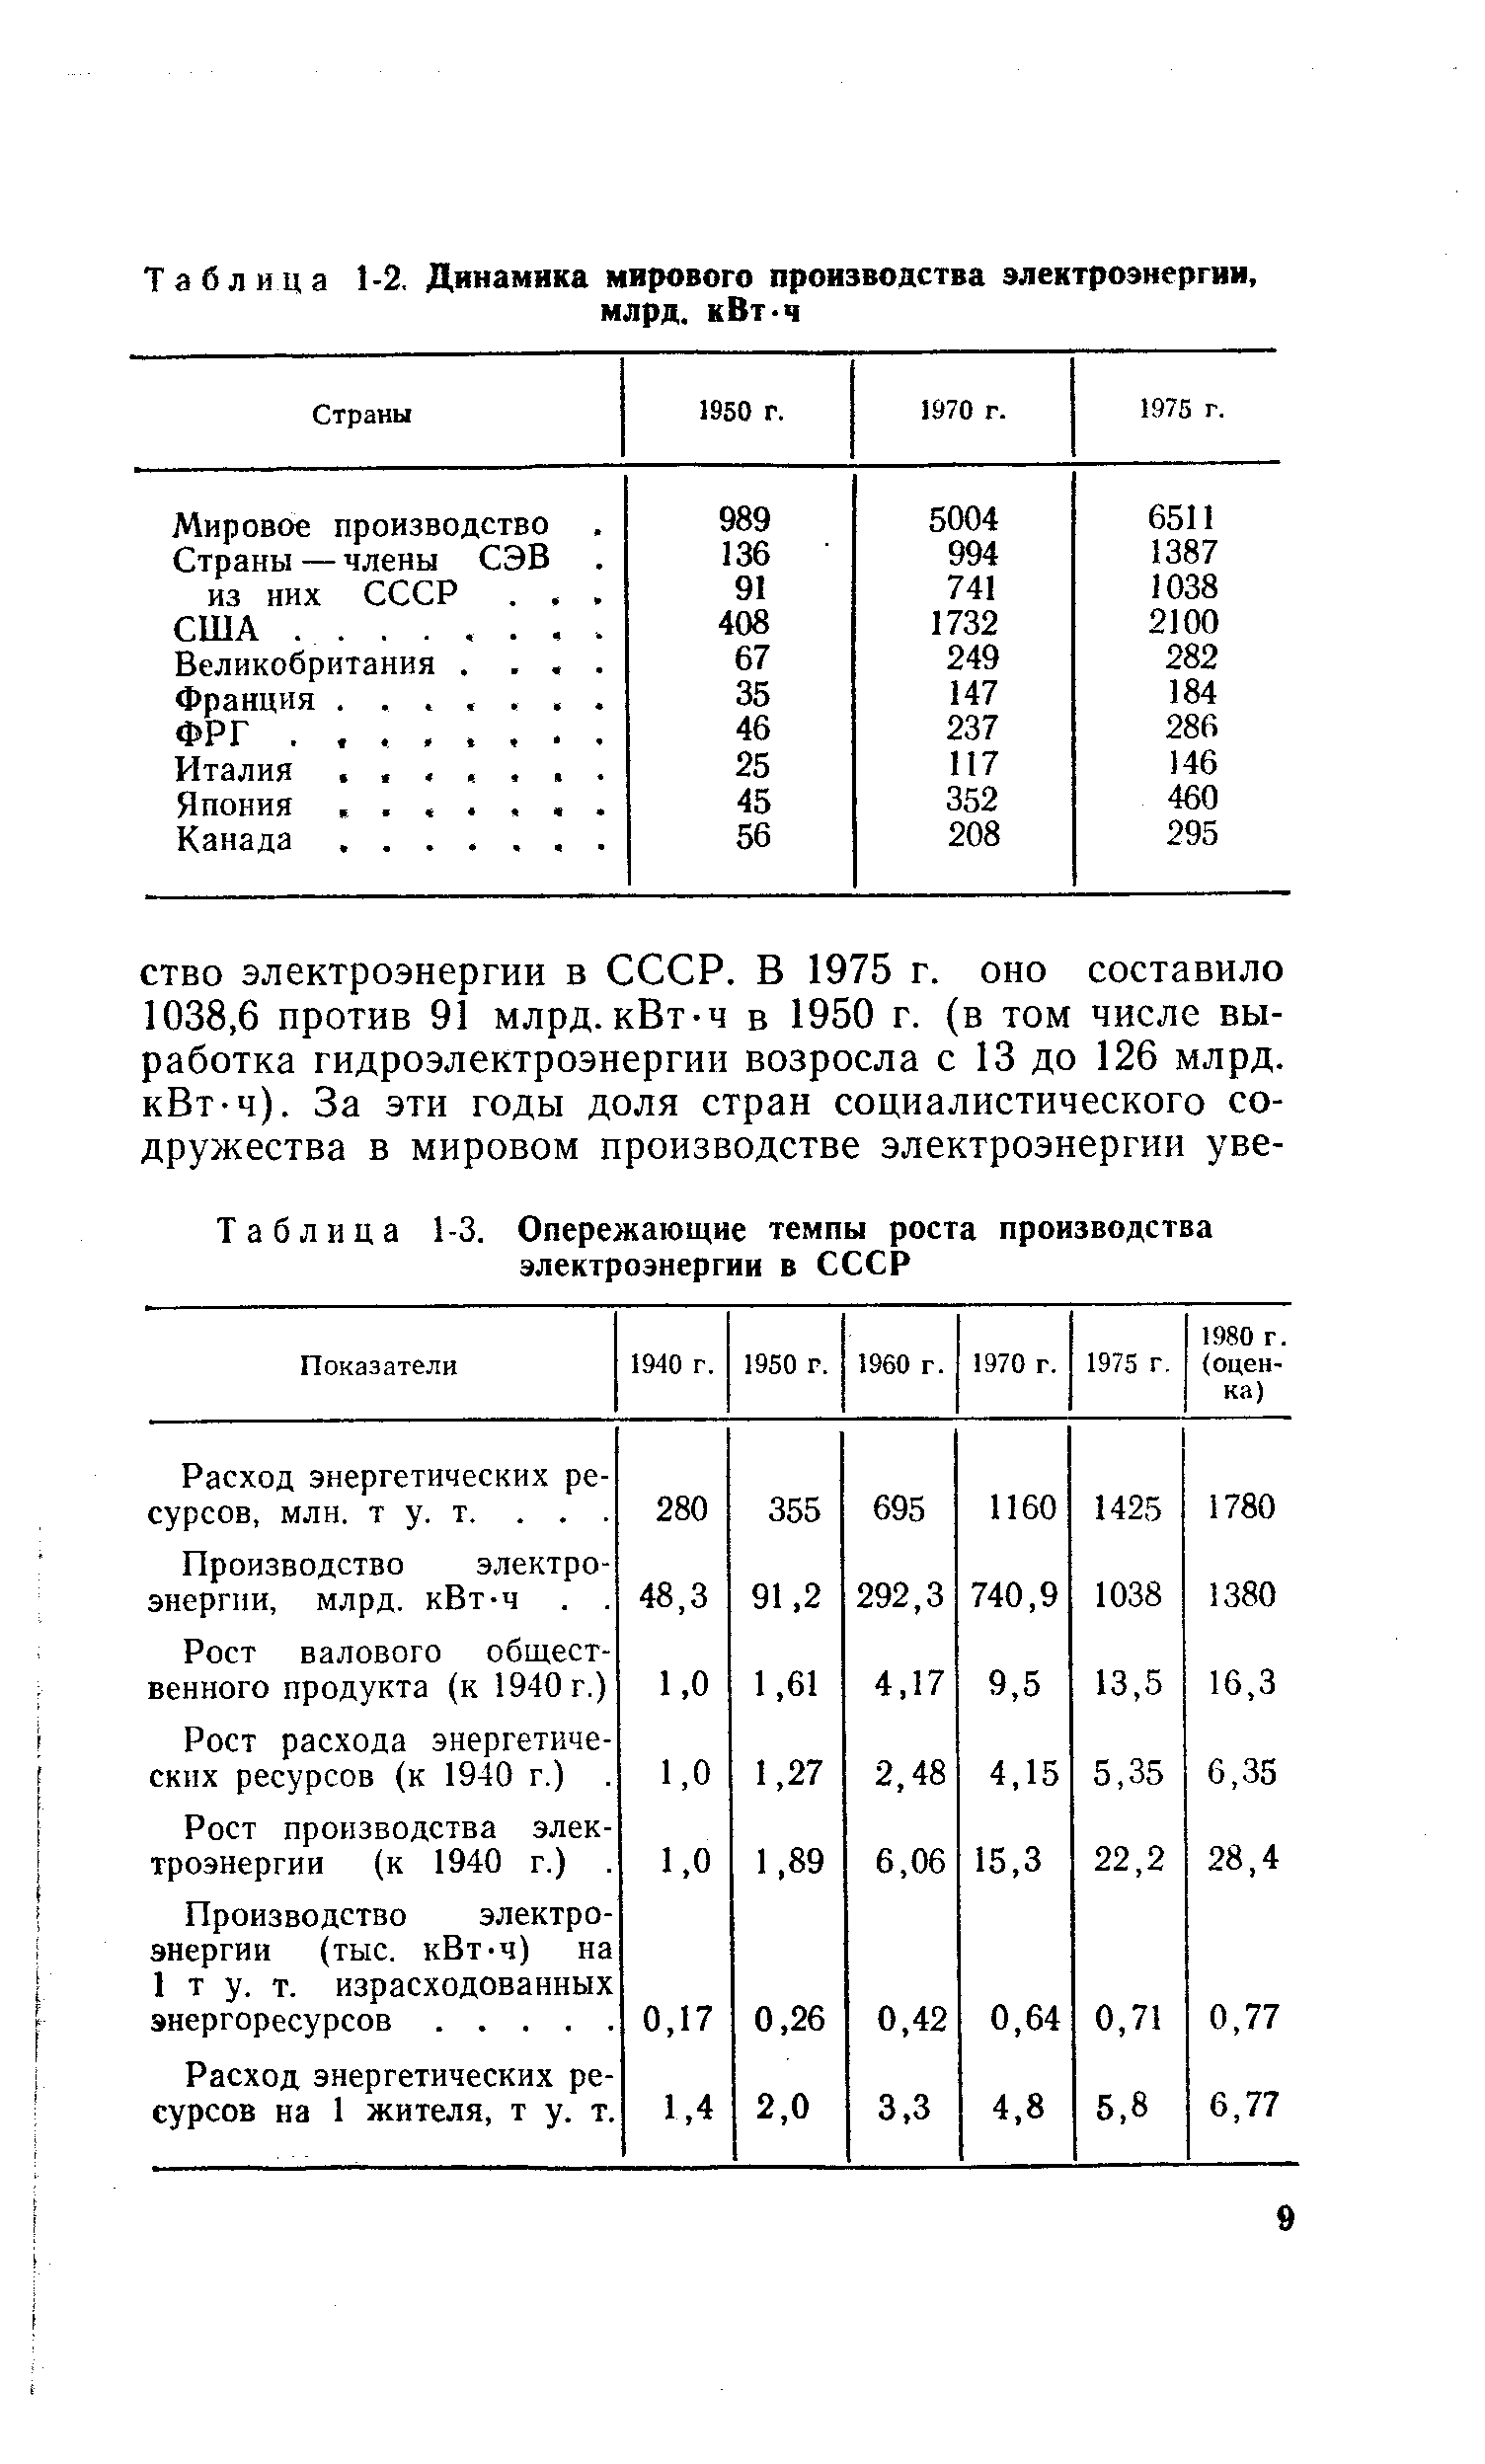 Таблица 1-3. Опережающие <a href="/info/1664">темпы роста производства</a> электроэнергии в СССР
